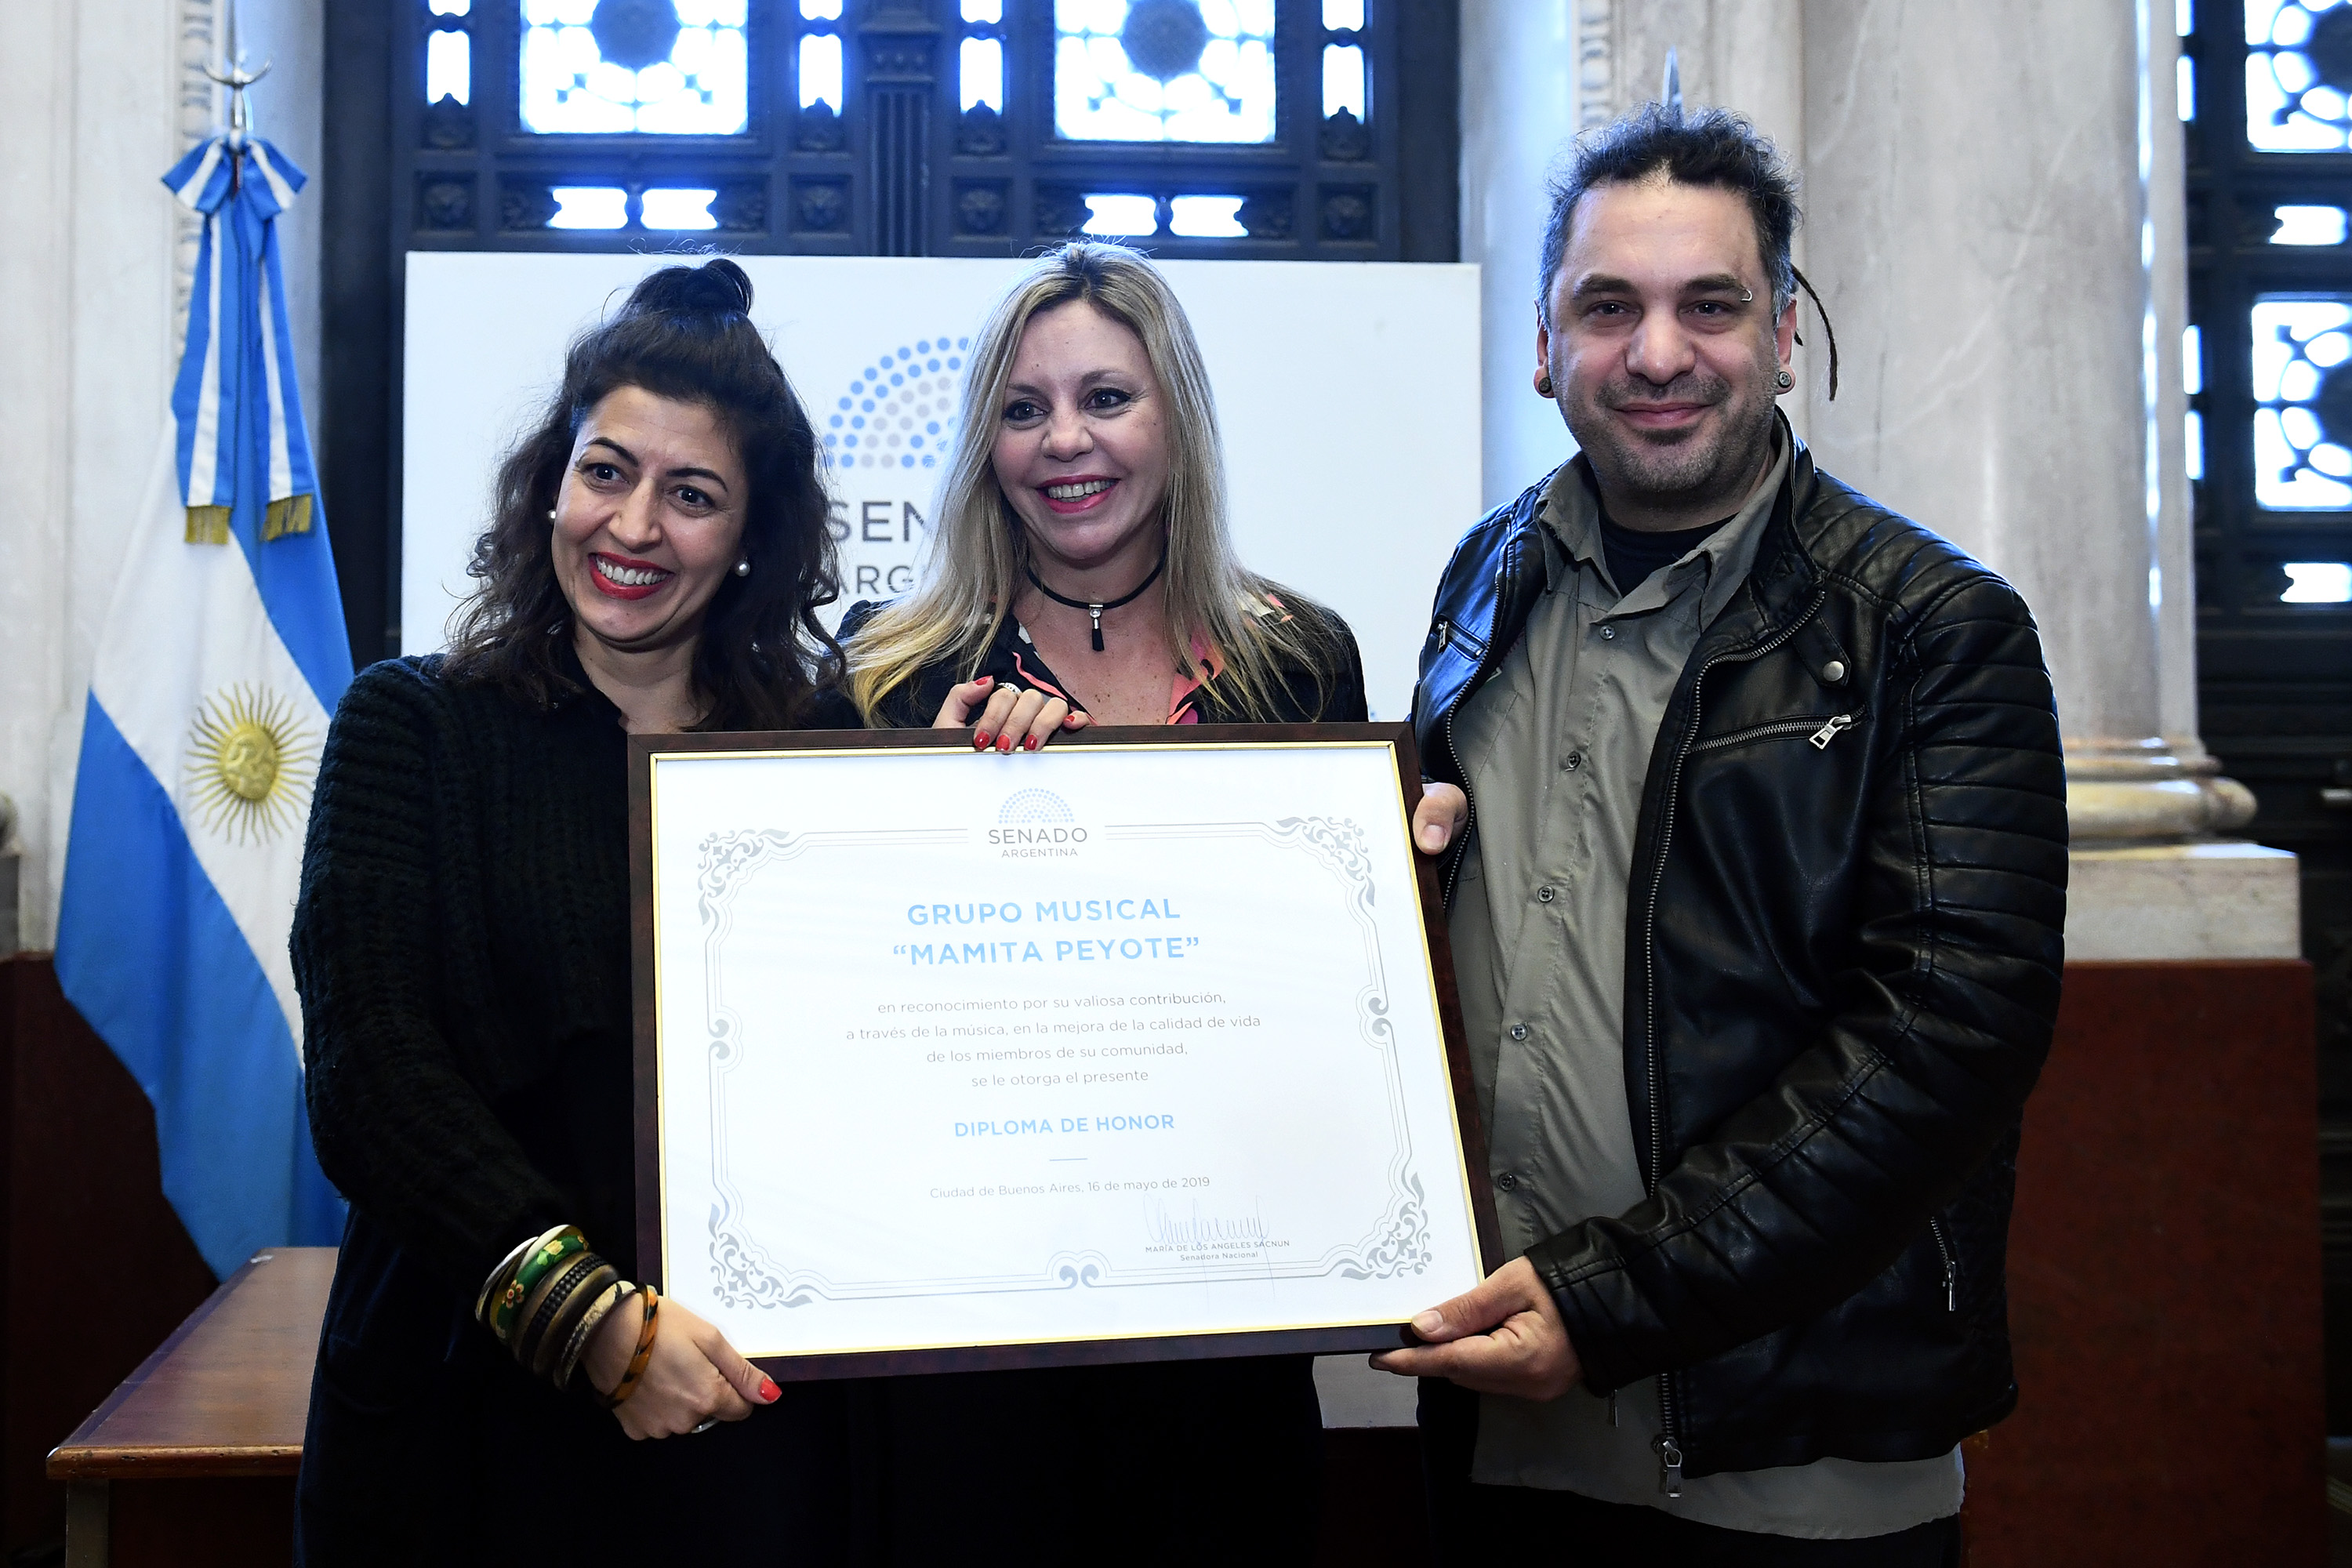 Diploma de Honor a la agrupación "Mamita Peyote" 16/05/2019